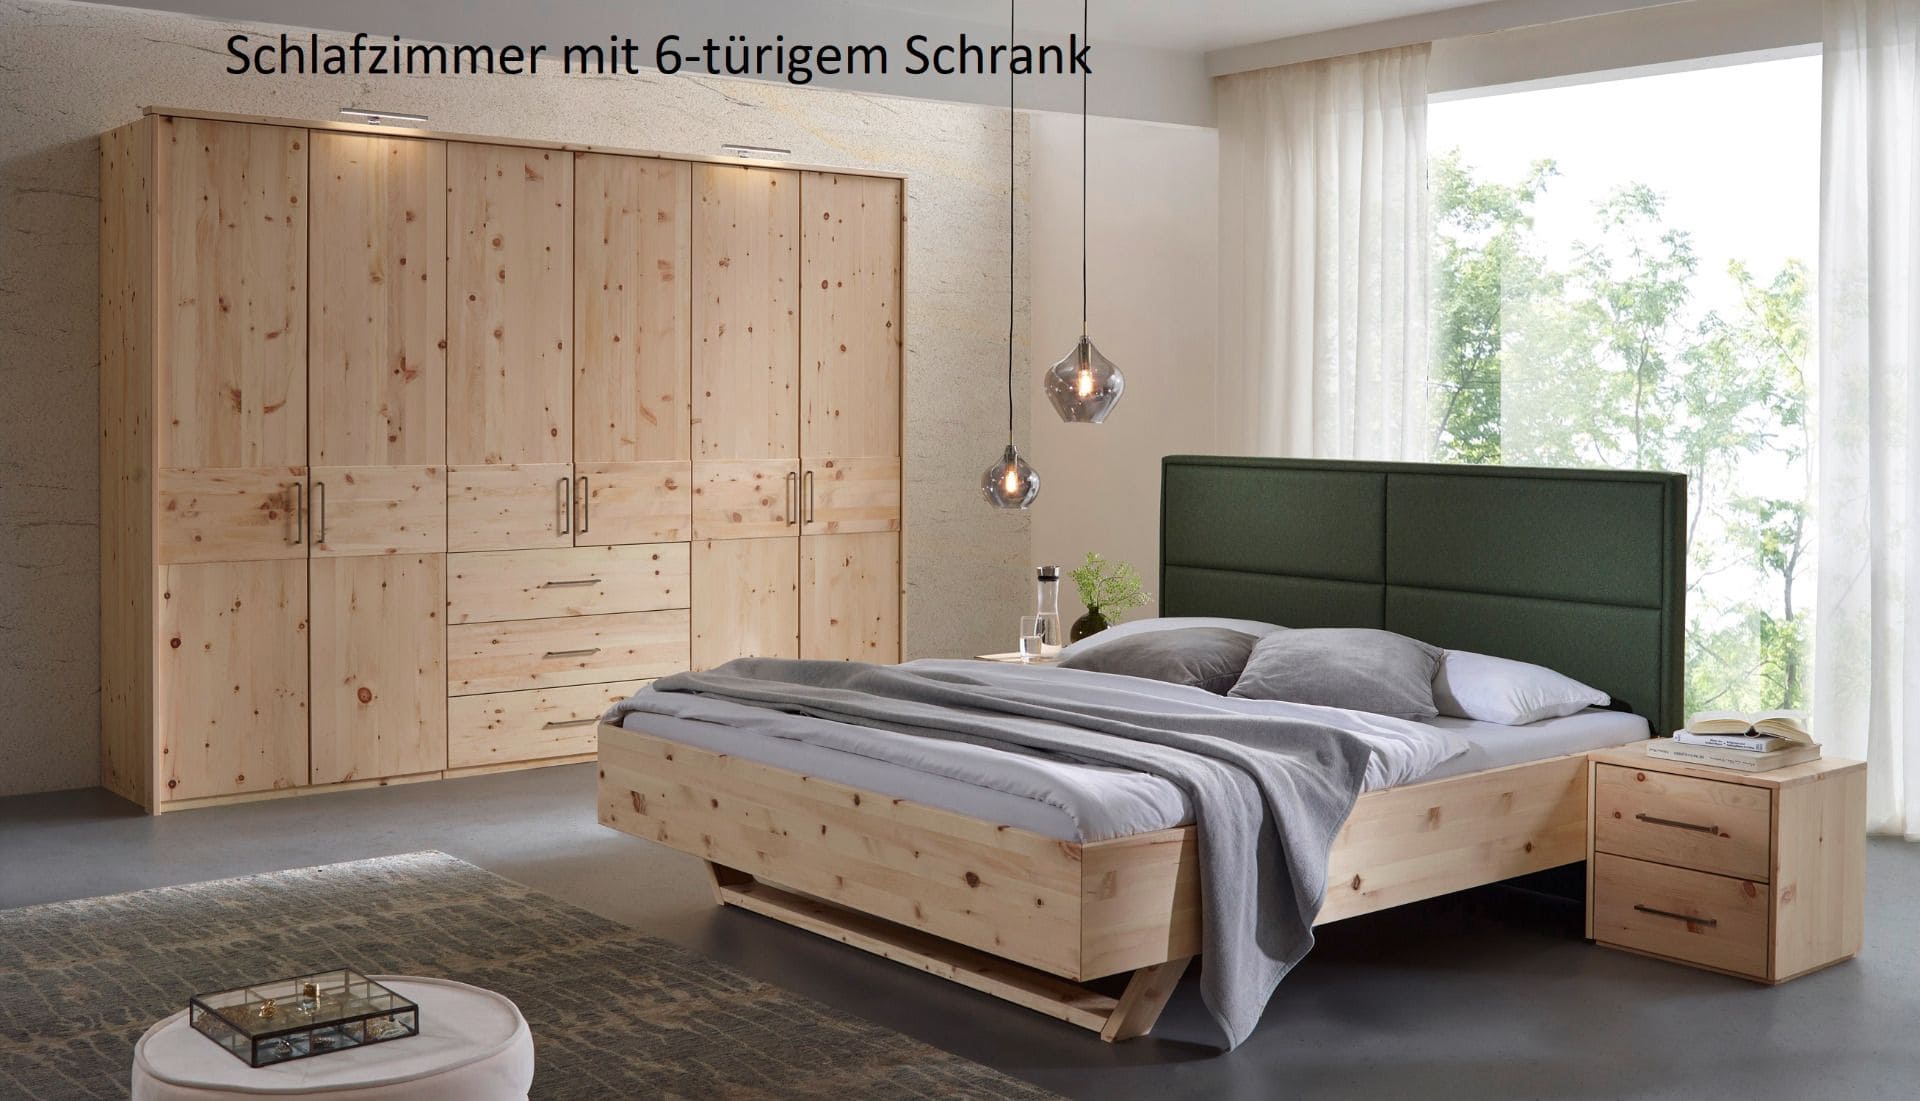 Schlafzimmermöbel aus Zirbenholz